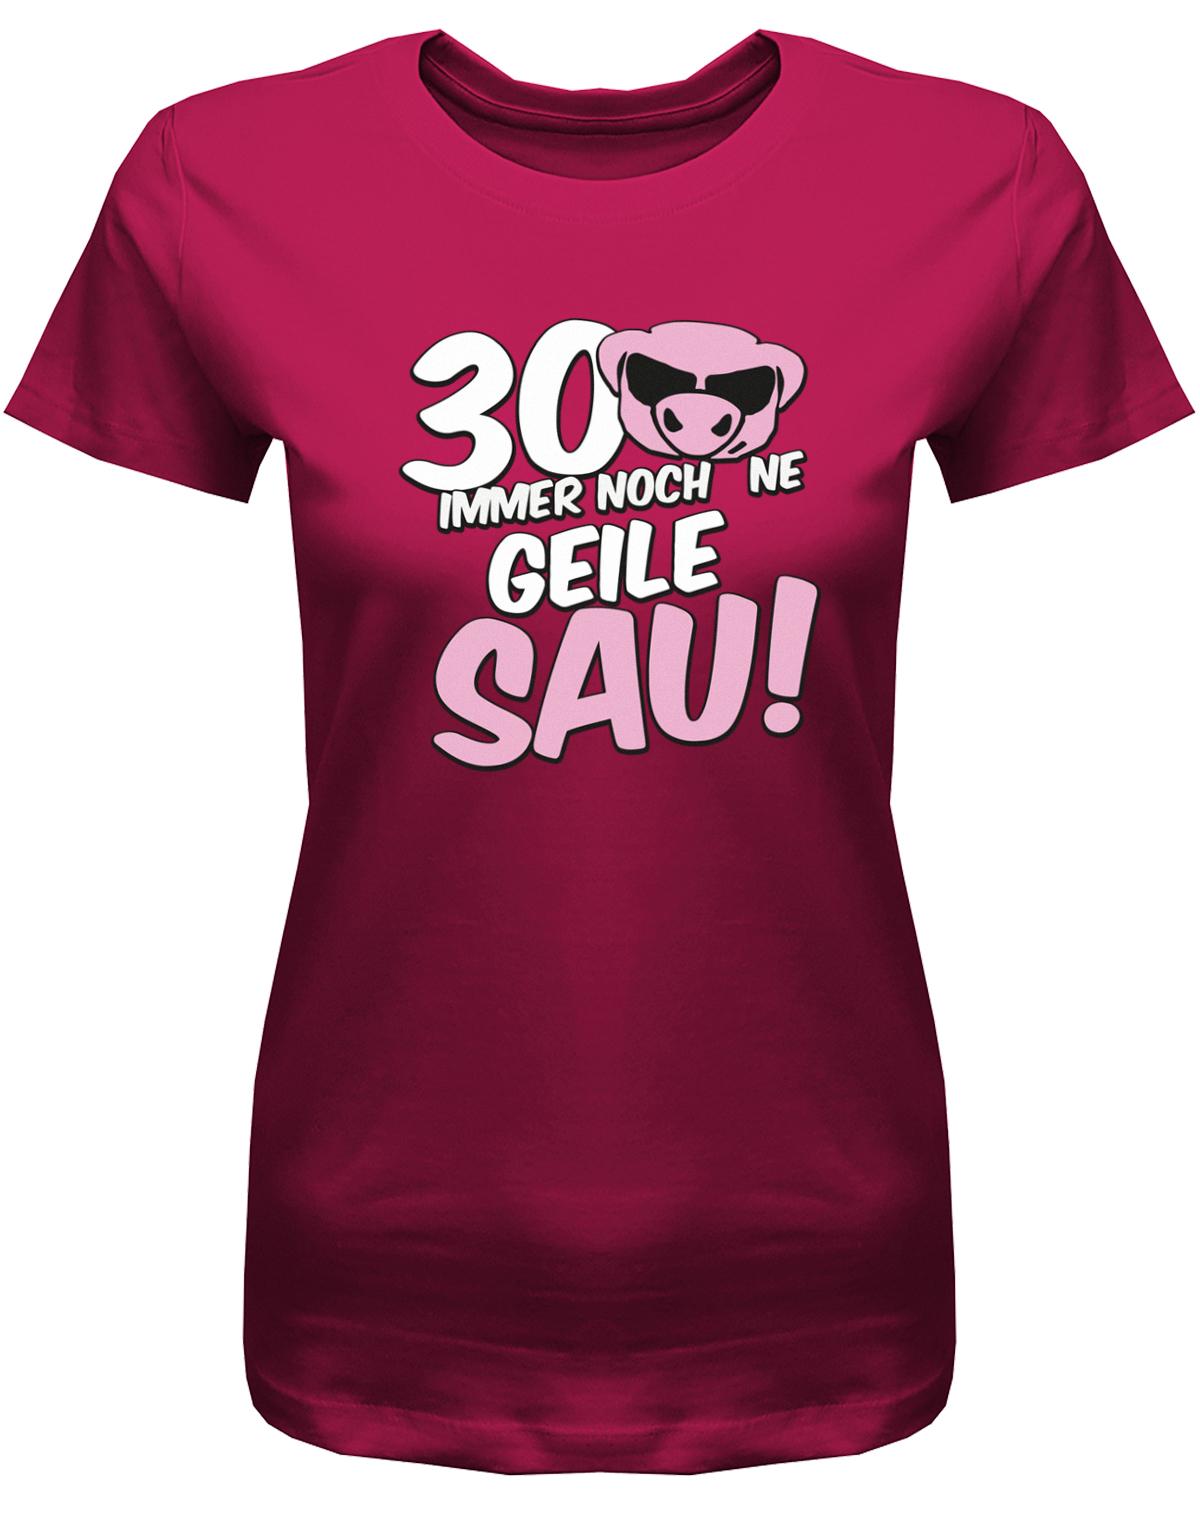 Lustiges T-Shirt zum 30 Geburtstag für die Frau Bedruckt mit 30 Immer noch 'ne geile Sau! Sau mit Sonnenbrille Sorbet